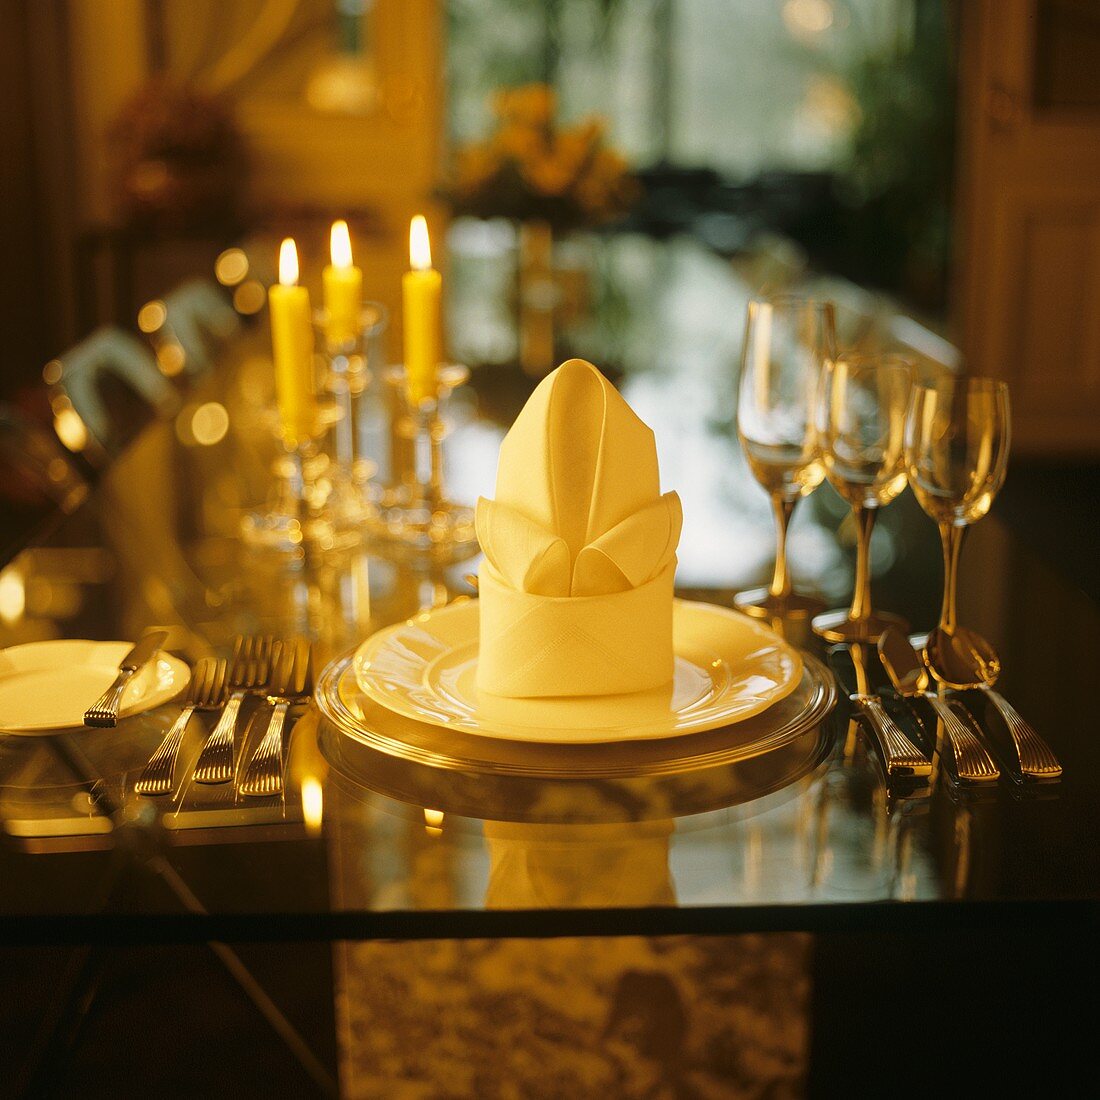 Table setting with stylishly folded napkin